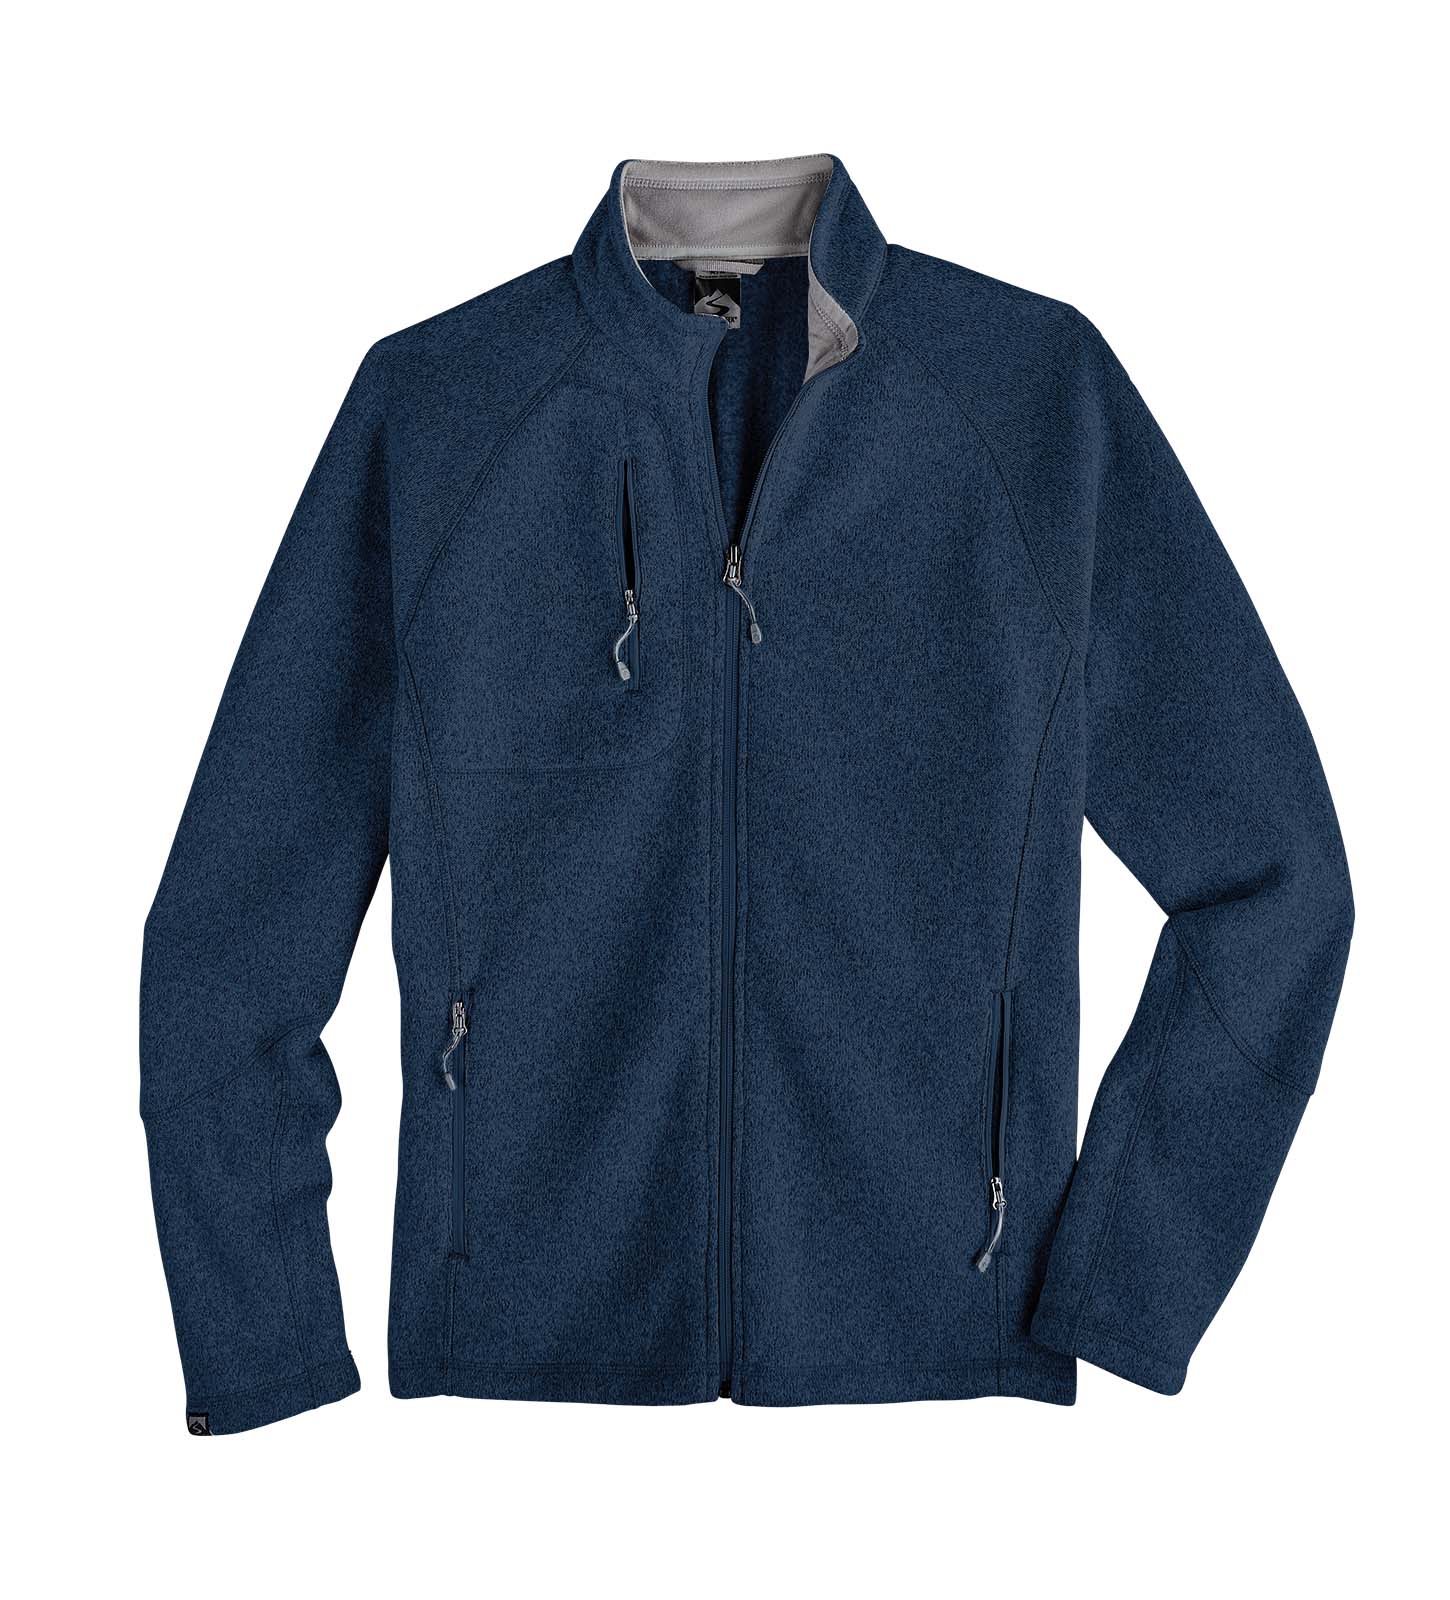 Men's Overachiever Sweater Fleece Jacket – Storm Creek